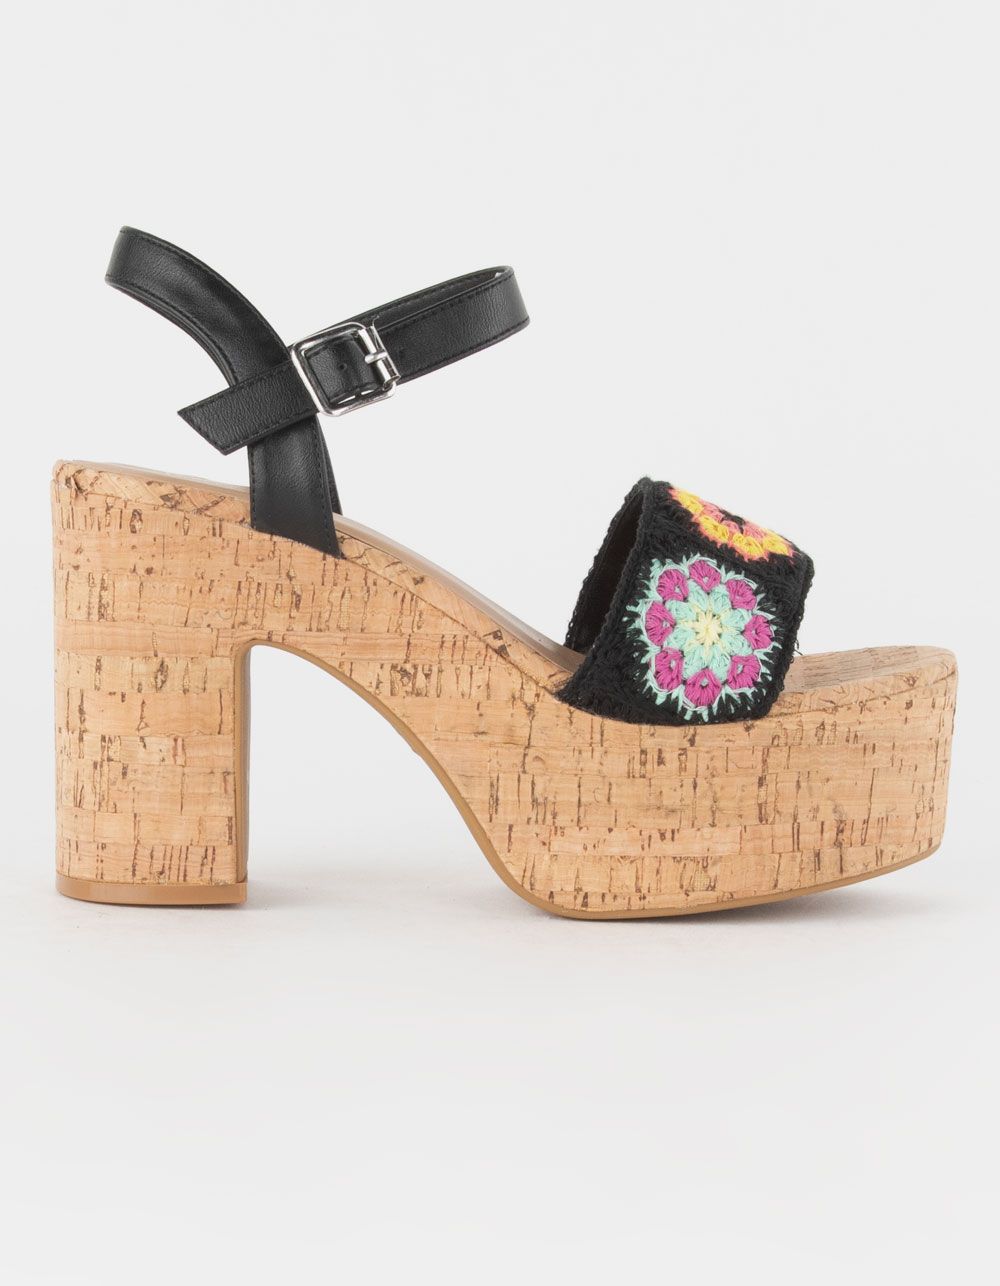 BAMBOO Crochet Womens Platform Sandals - BLK/MULTI | Tillys